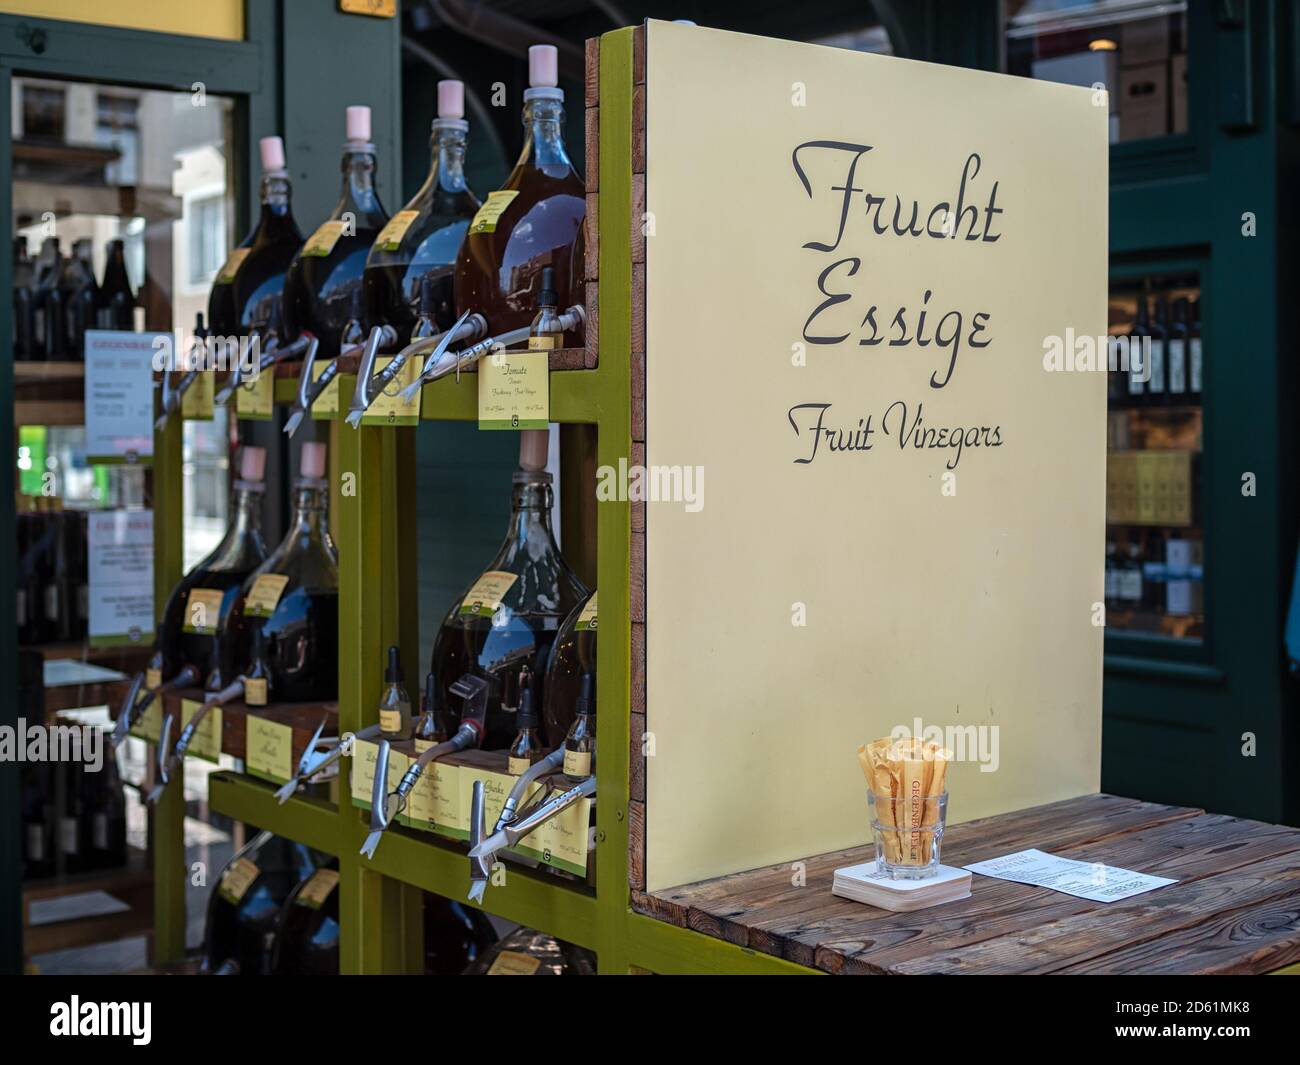 VIENNA, AUSTRIA - JULY 15, 2019:  Fruit Vinegars (frucht essige) for sale in delicatessen Stock Photo